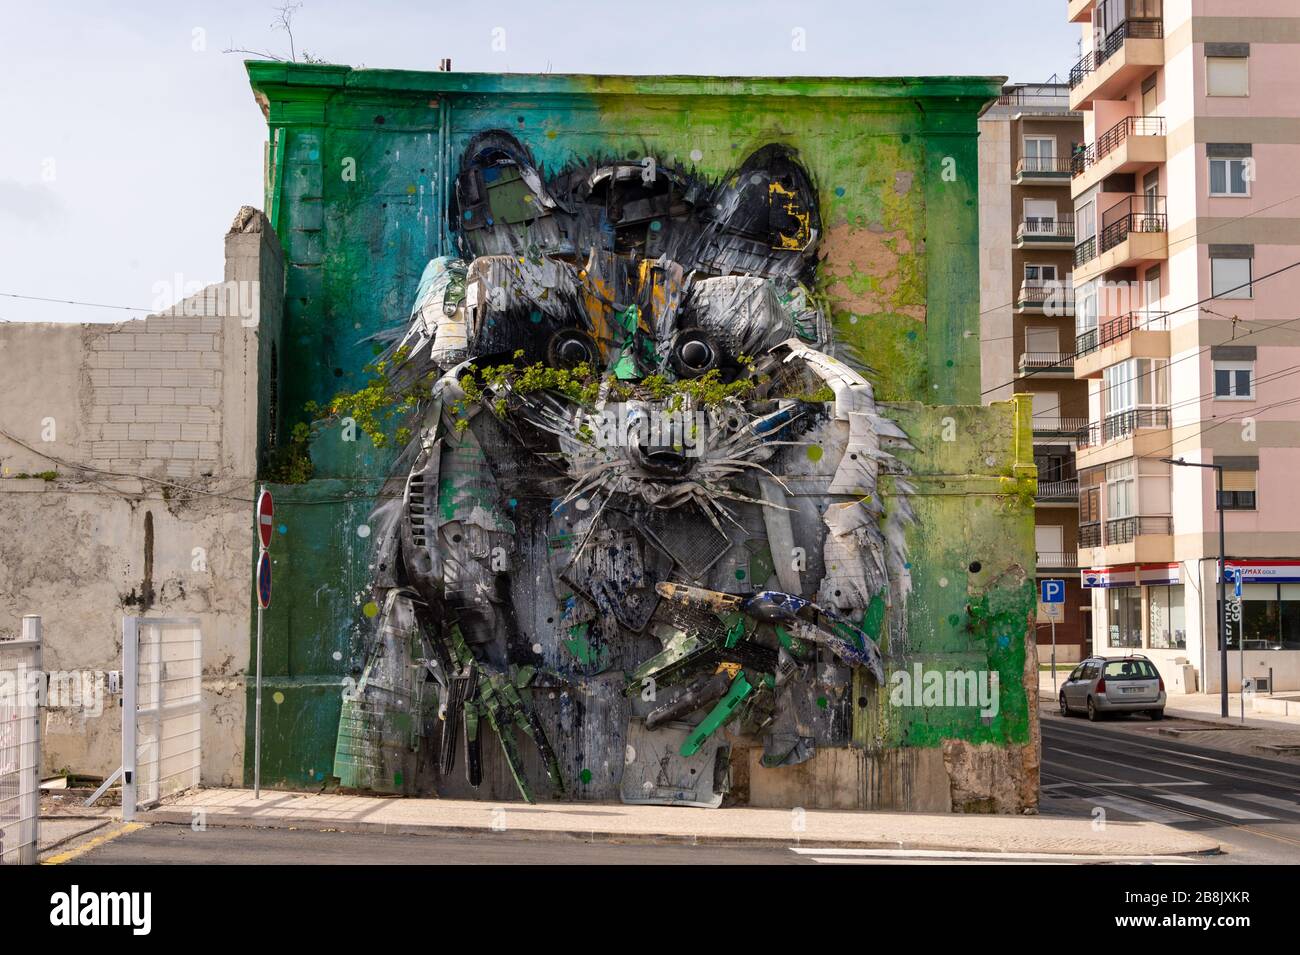 Lisboa, Portugal - 2 de marzo de 2020: La gran escultura del mapache de Bordalo II es una escultura en 3D hecha de chatarra Foto de stock